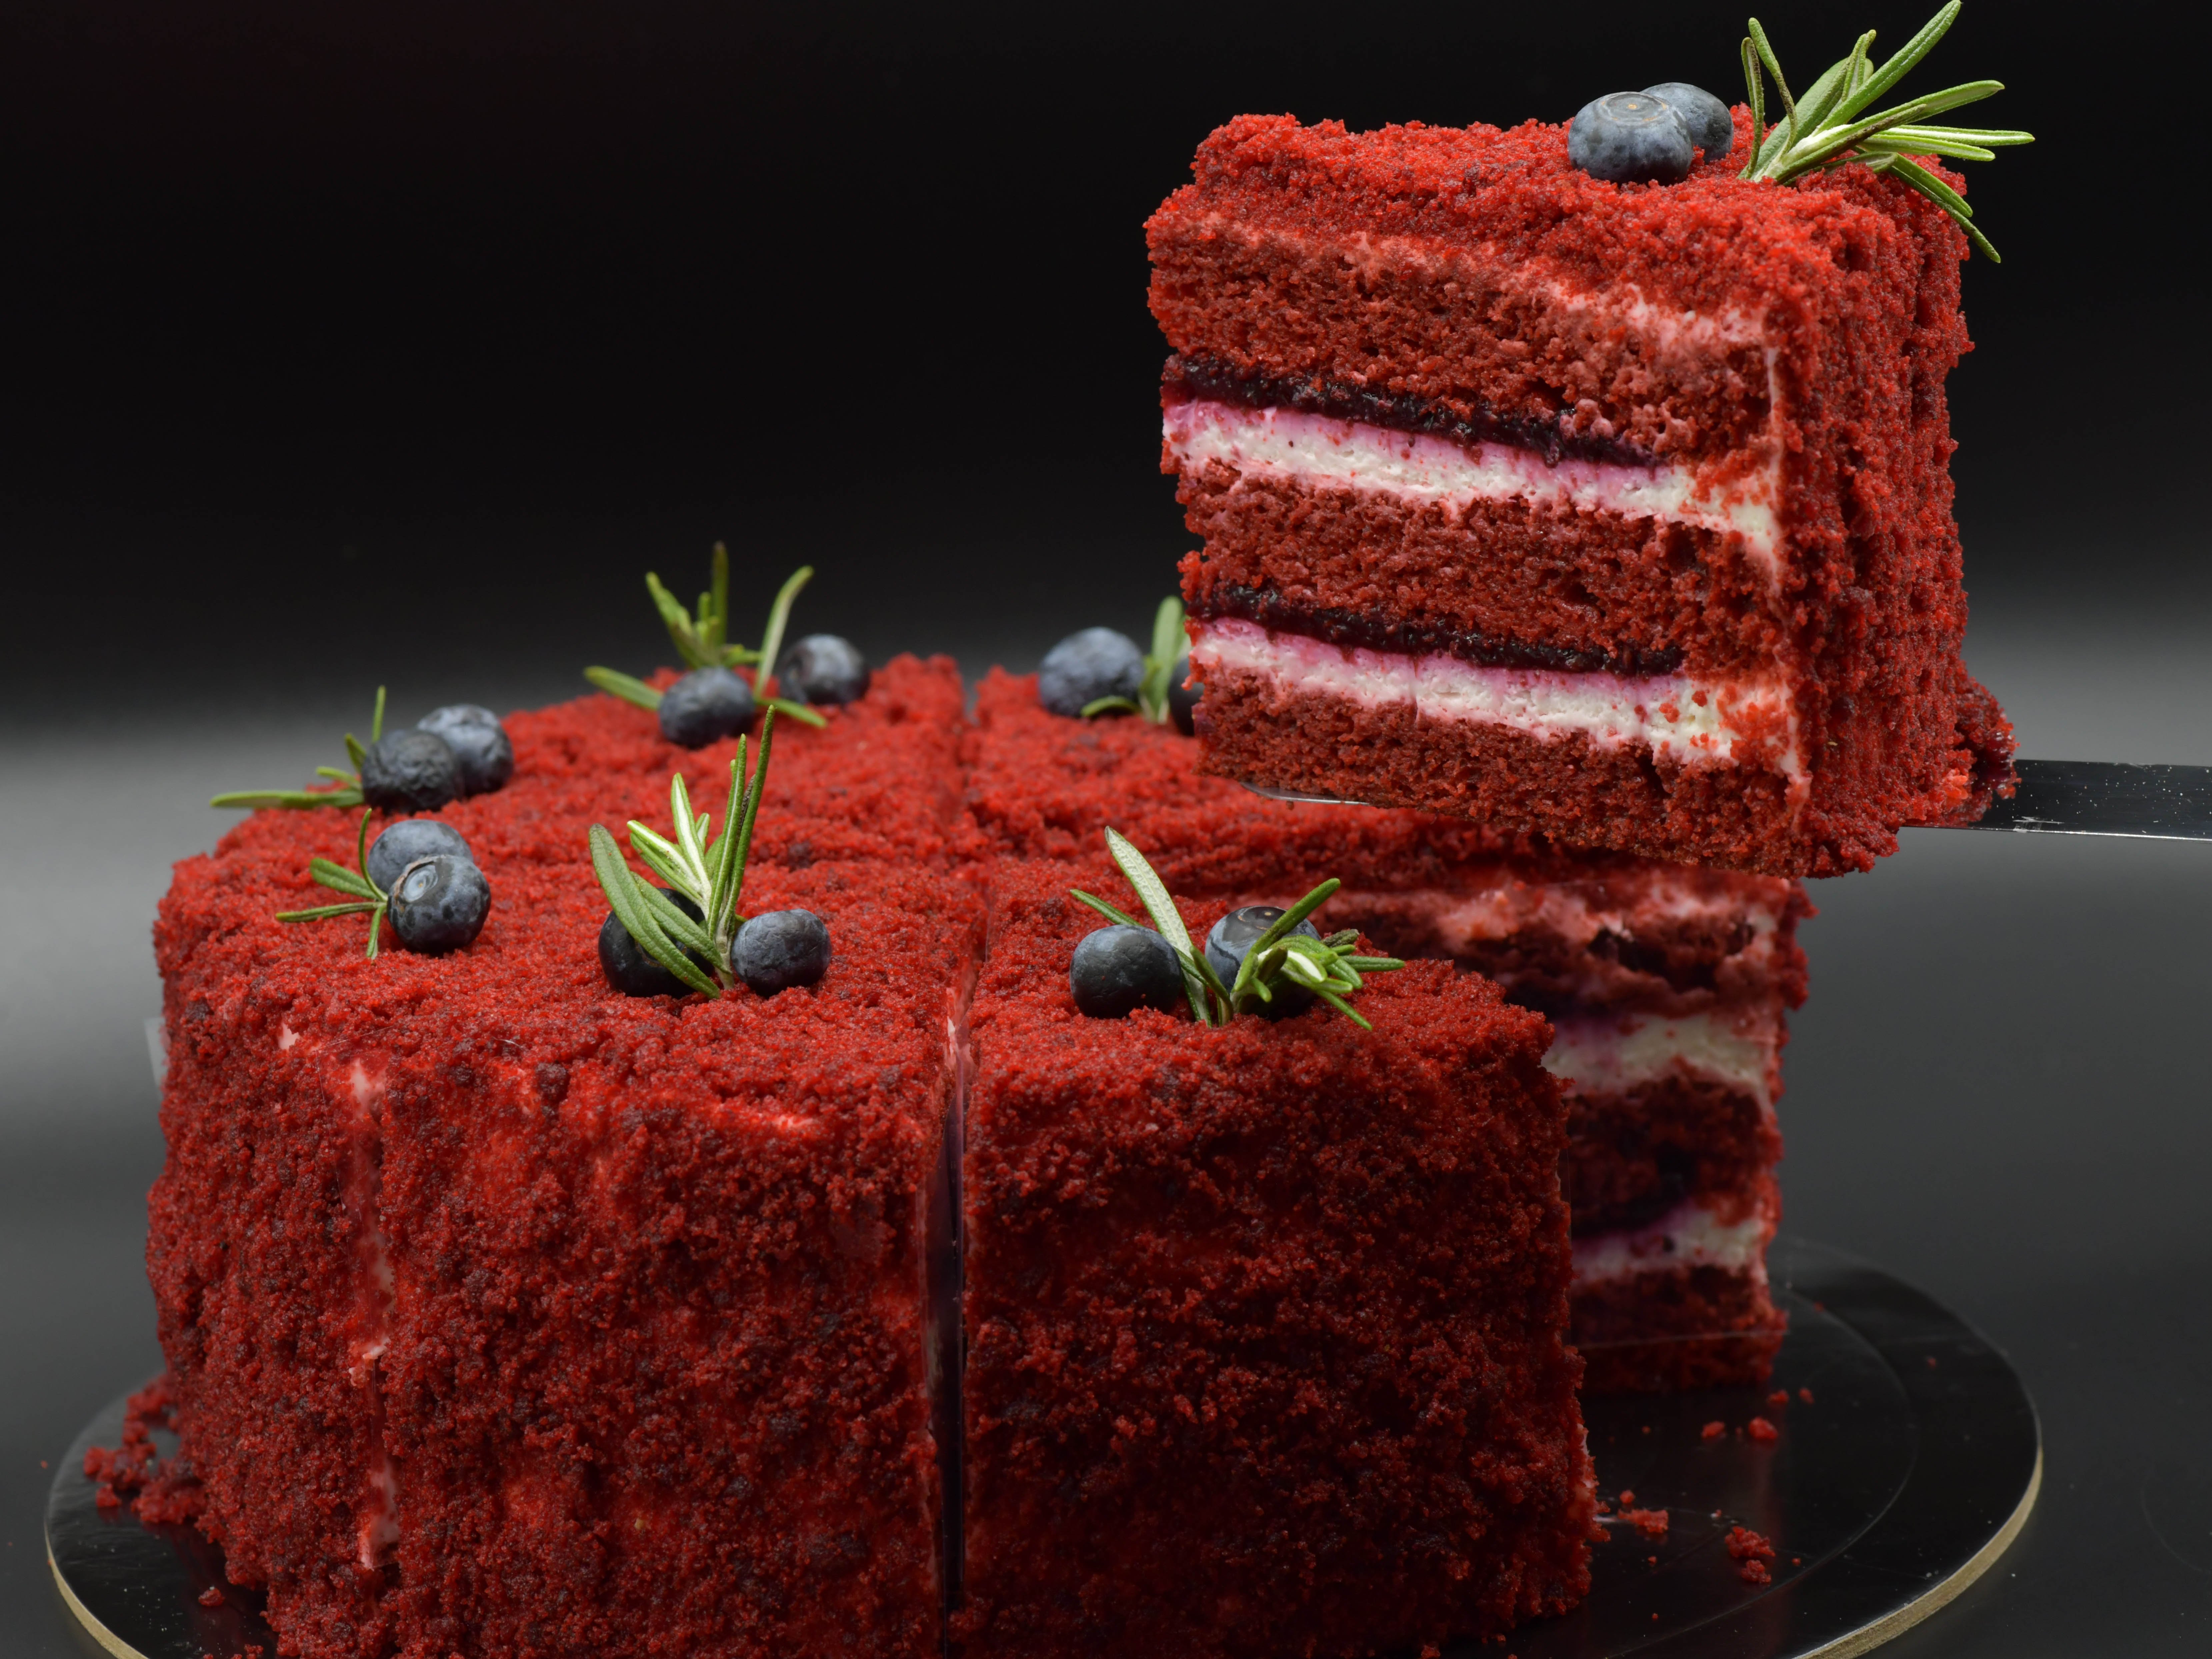 Торт красный бархат рецепт в домашних условиях в духовке классический рецепт с фото